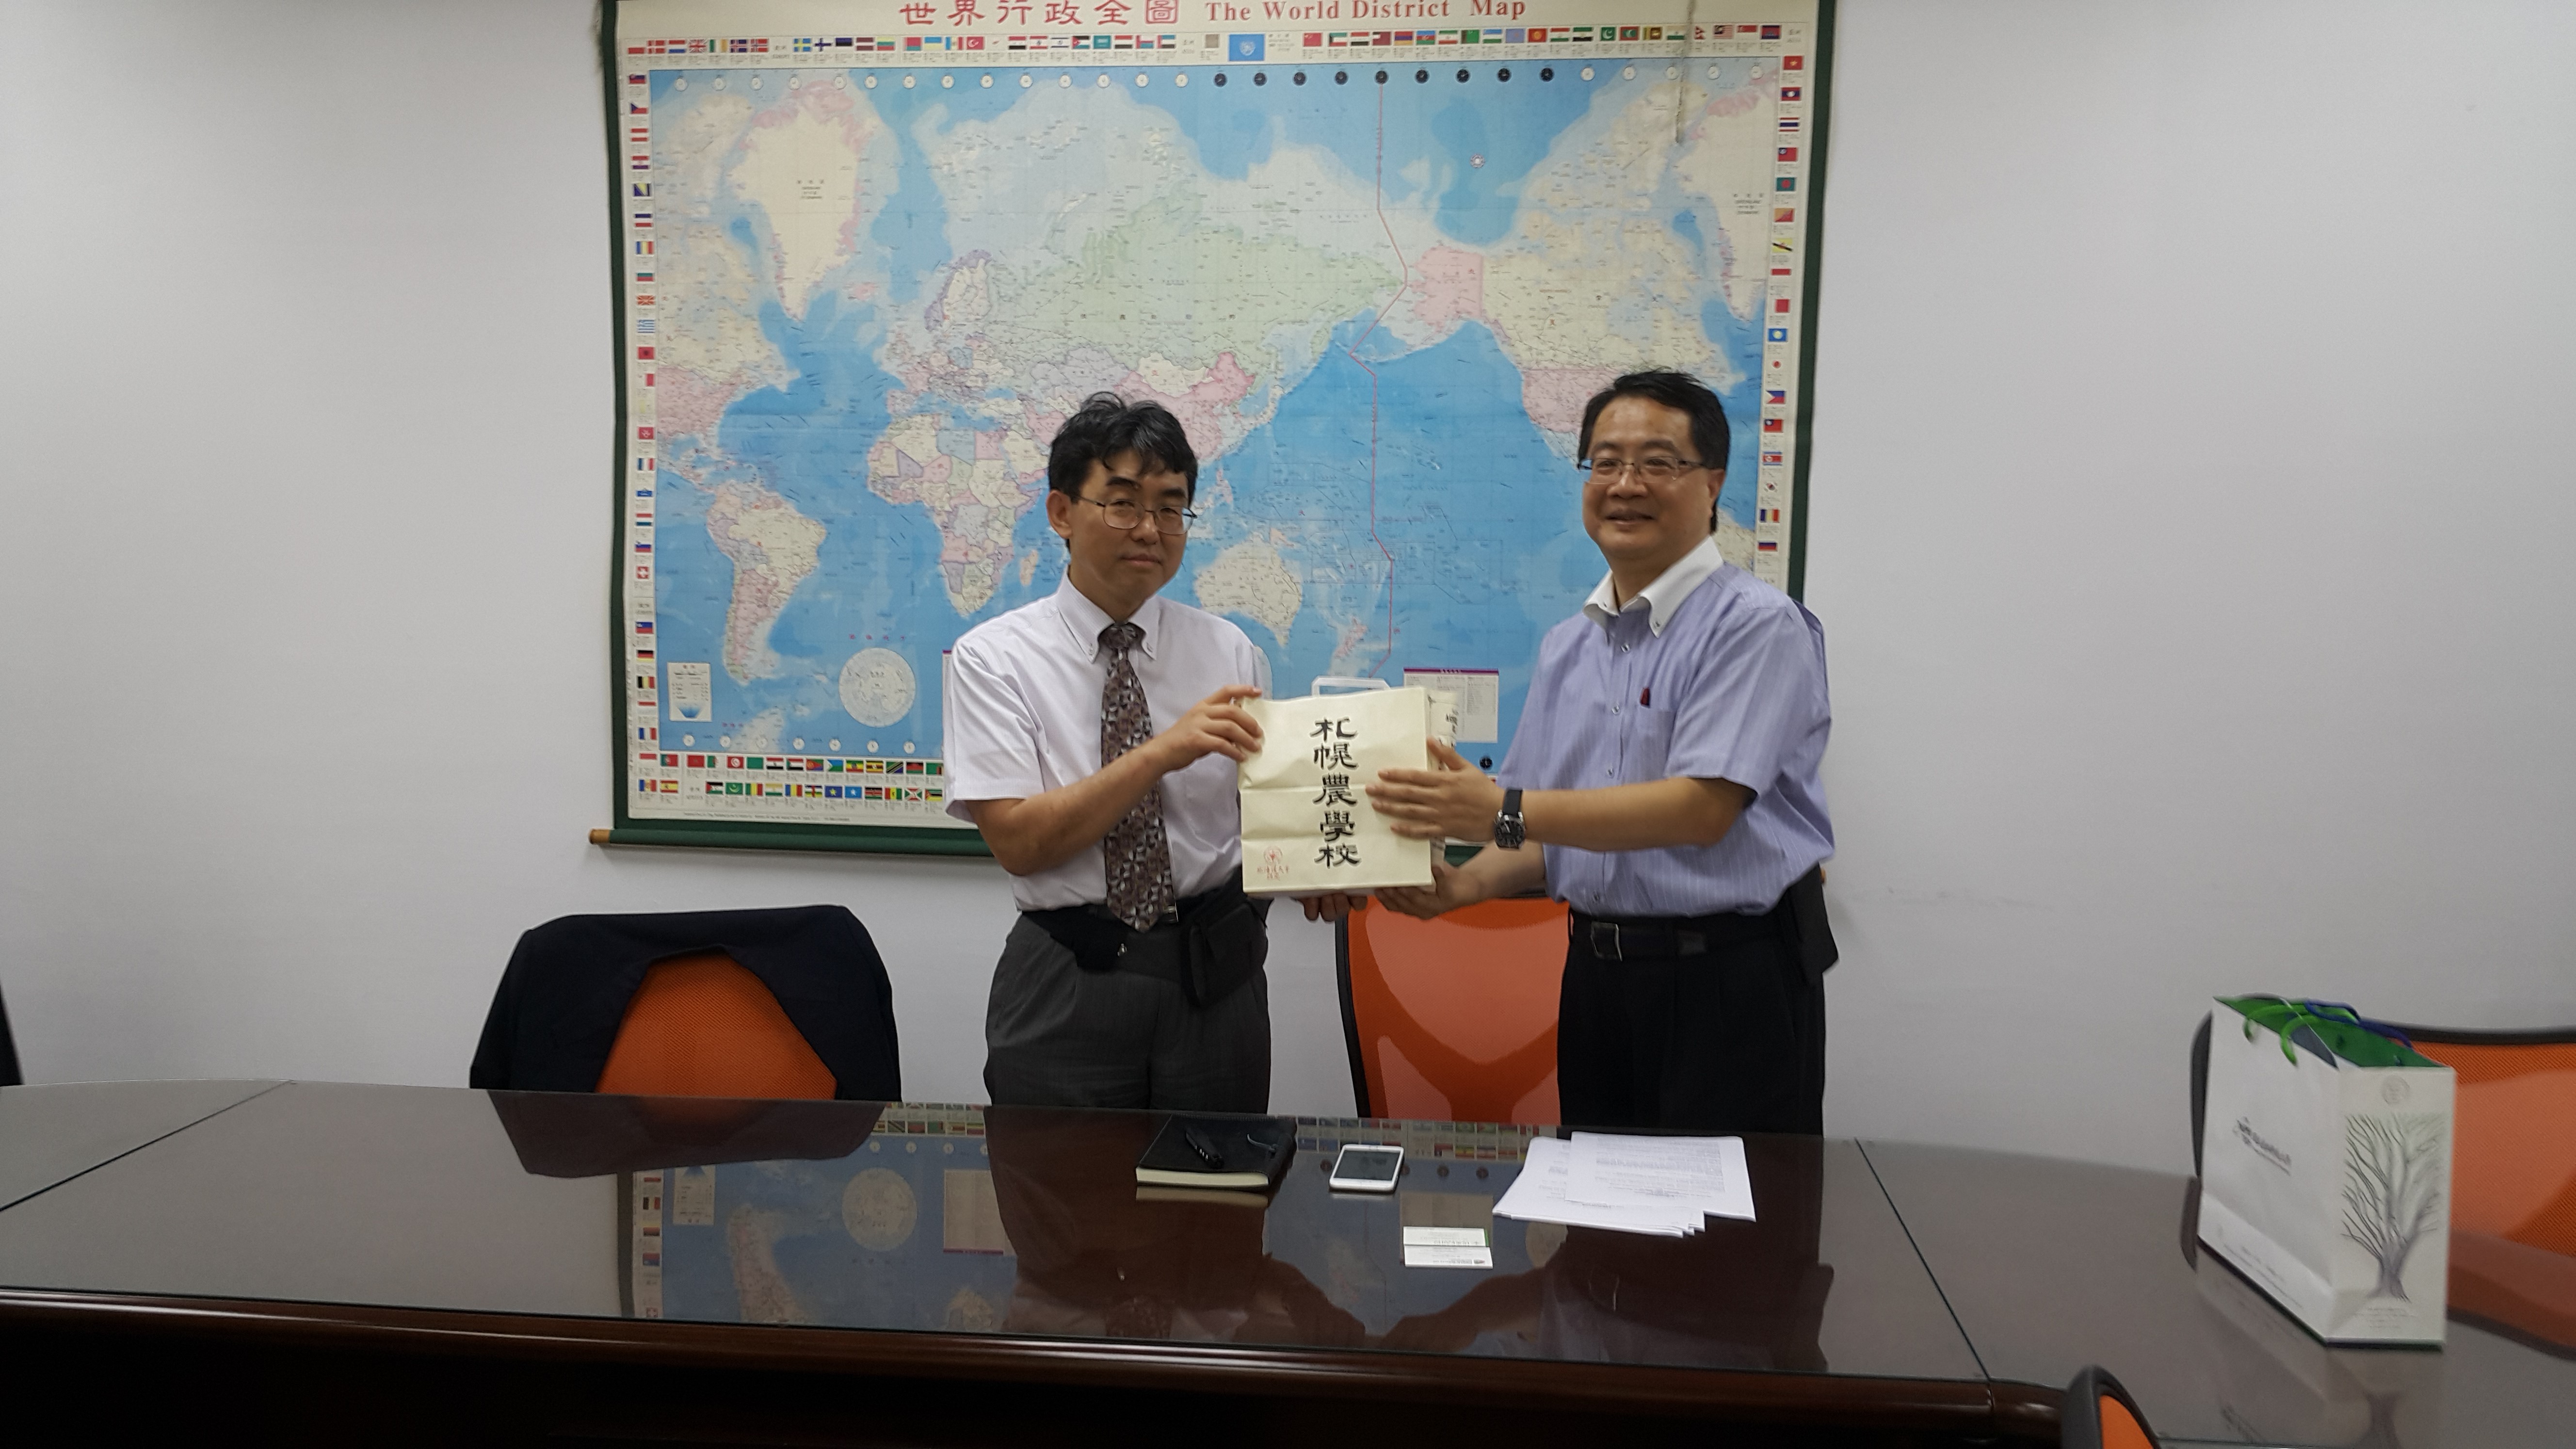 日本北海道工學部院長 Prof. Takeshi Ohkuma到本校參訪